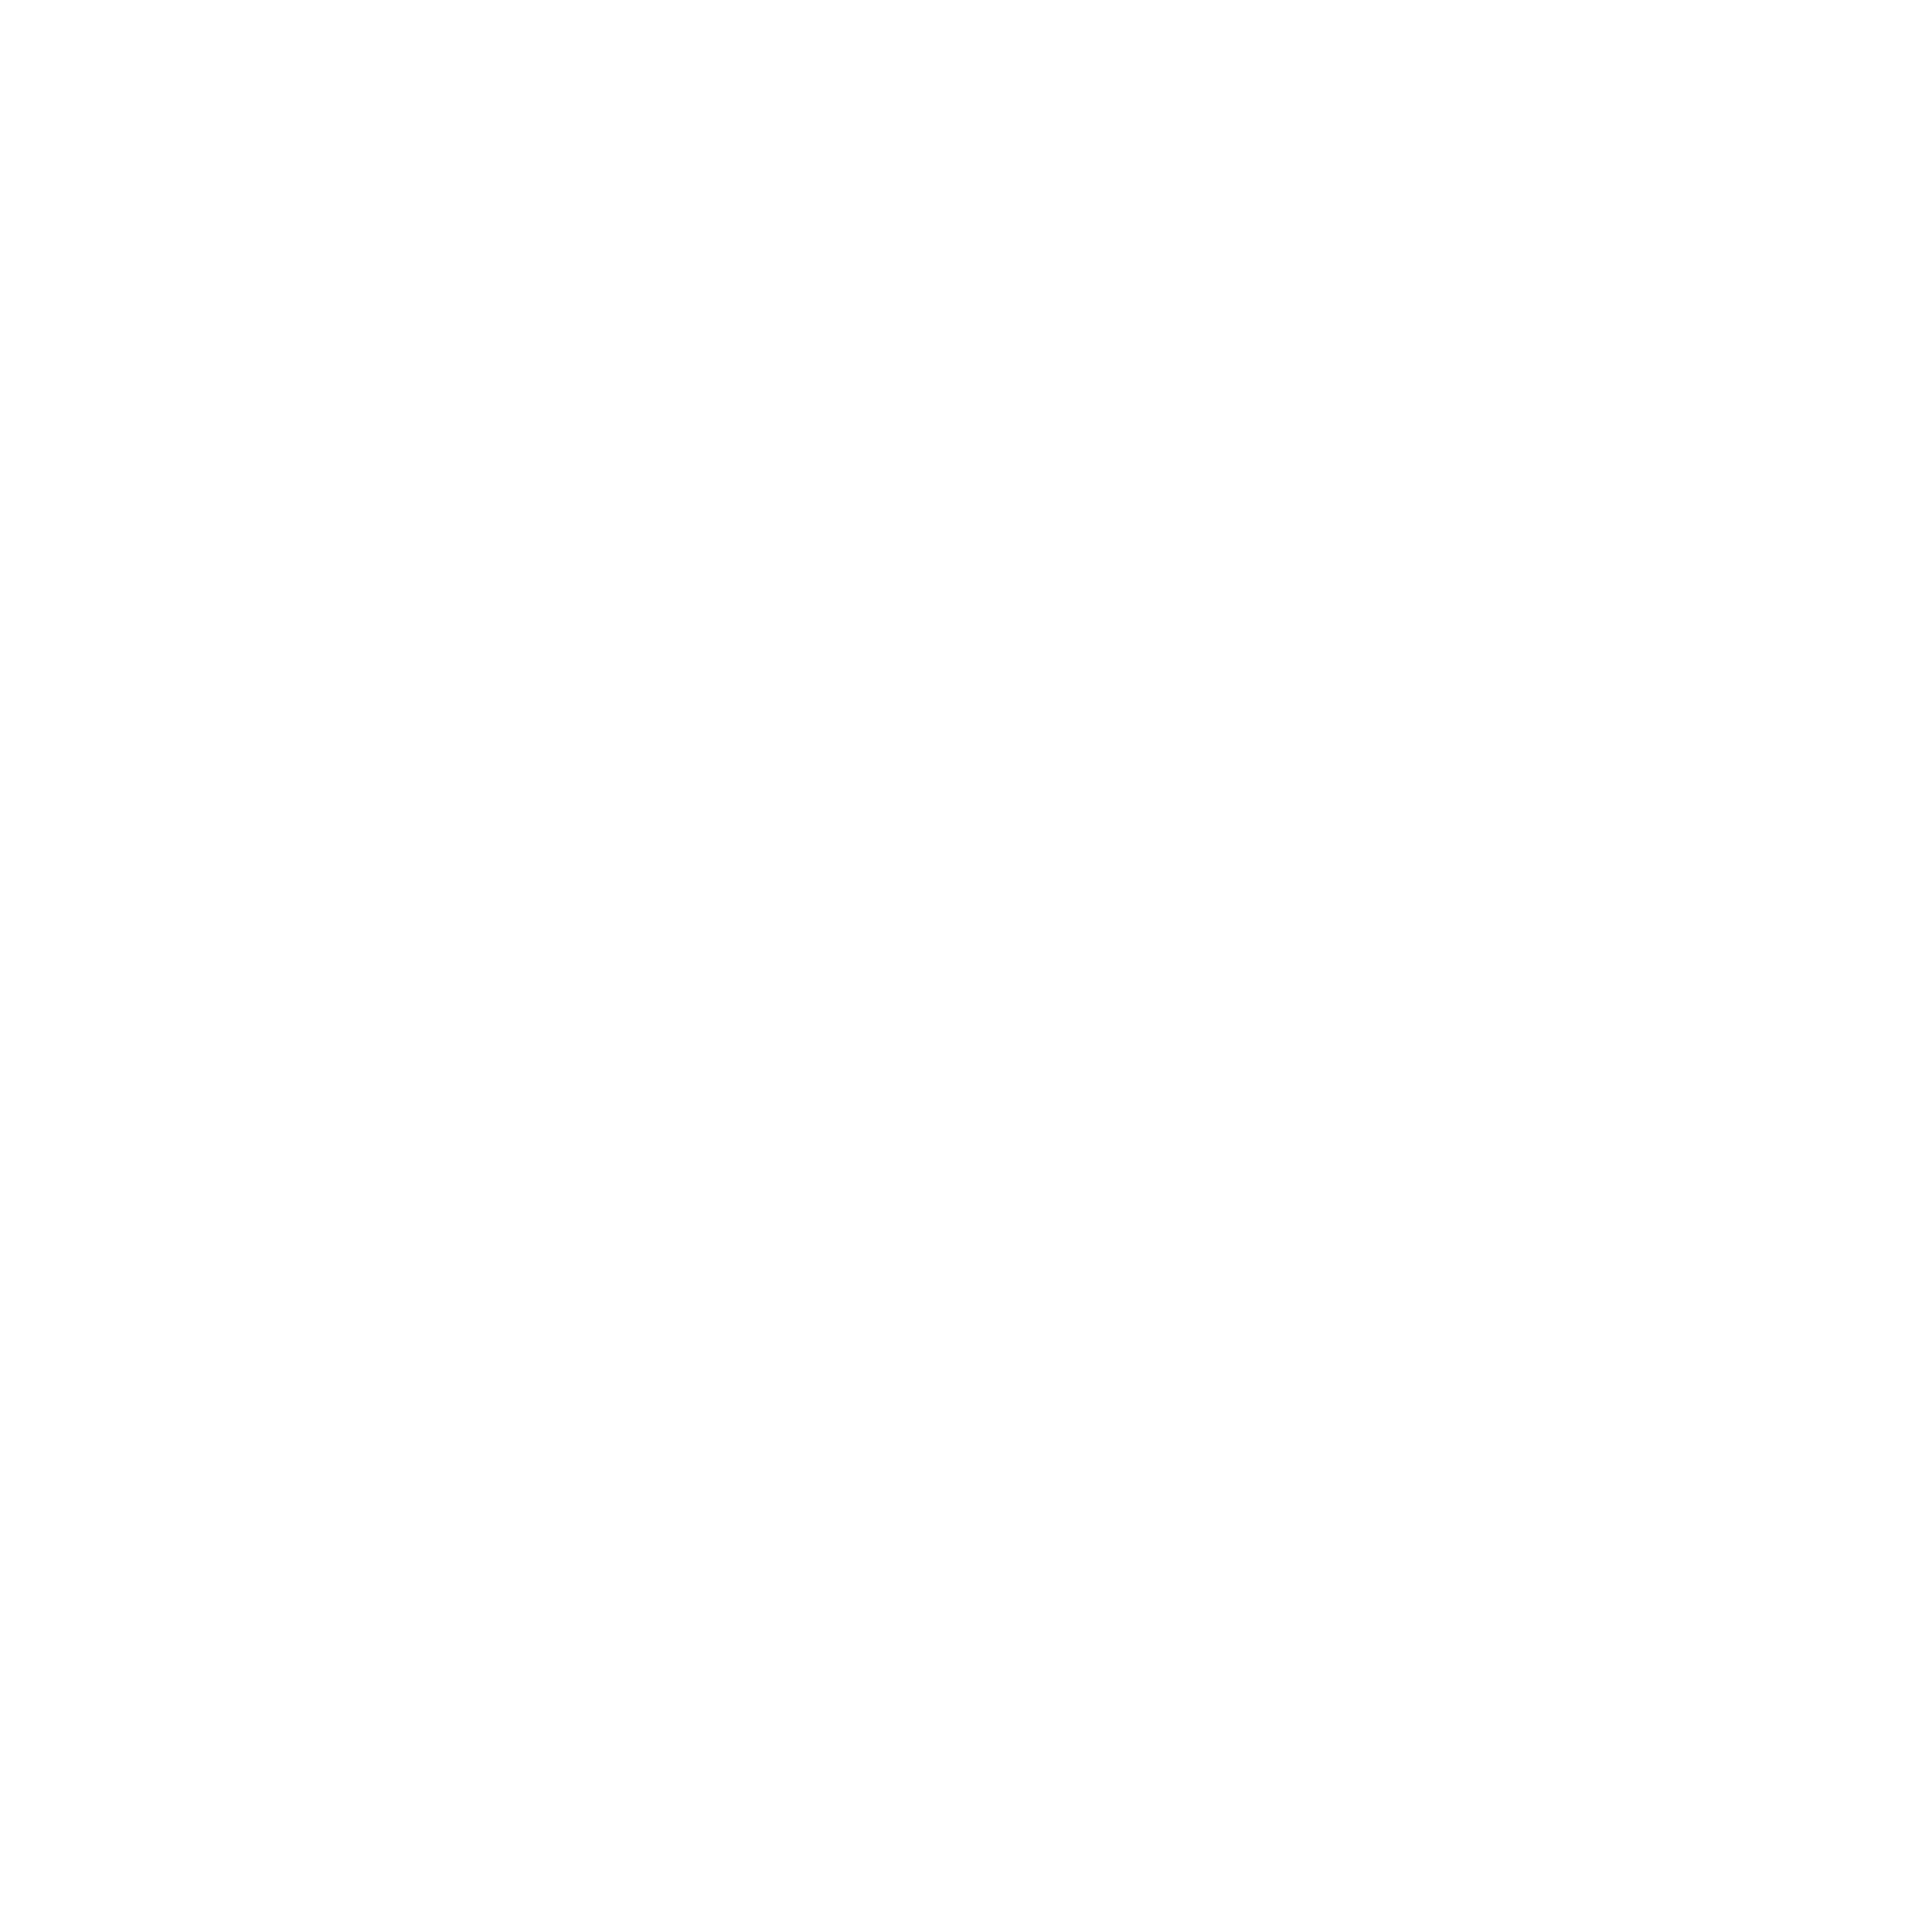 aye kee